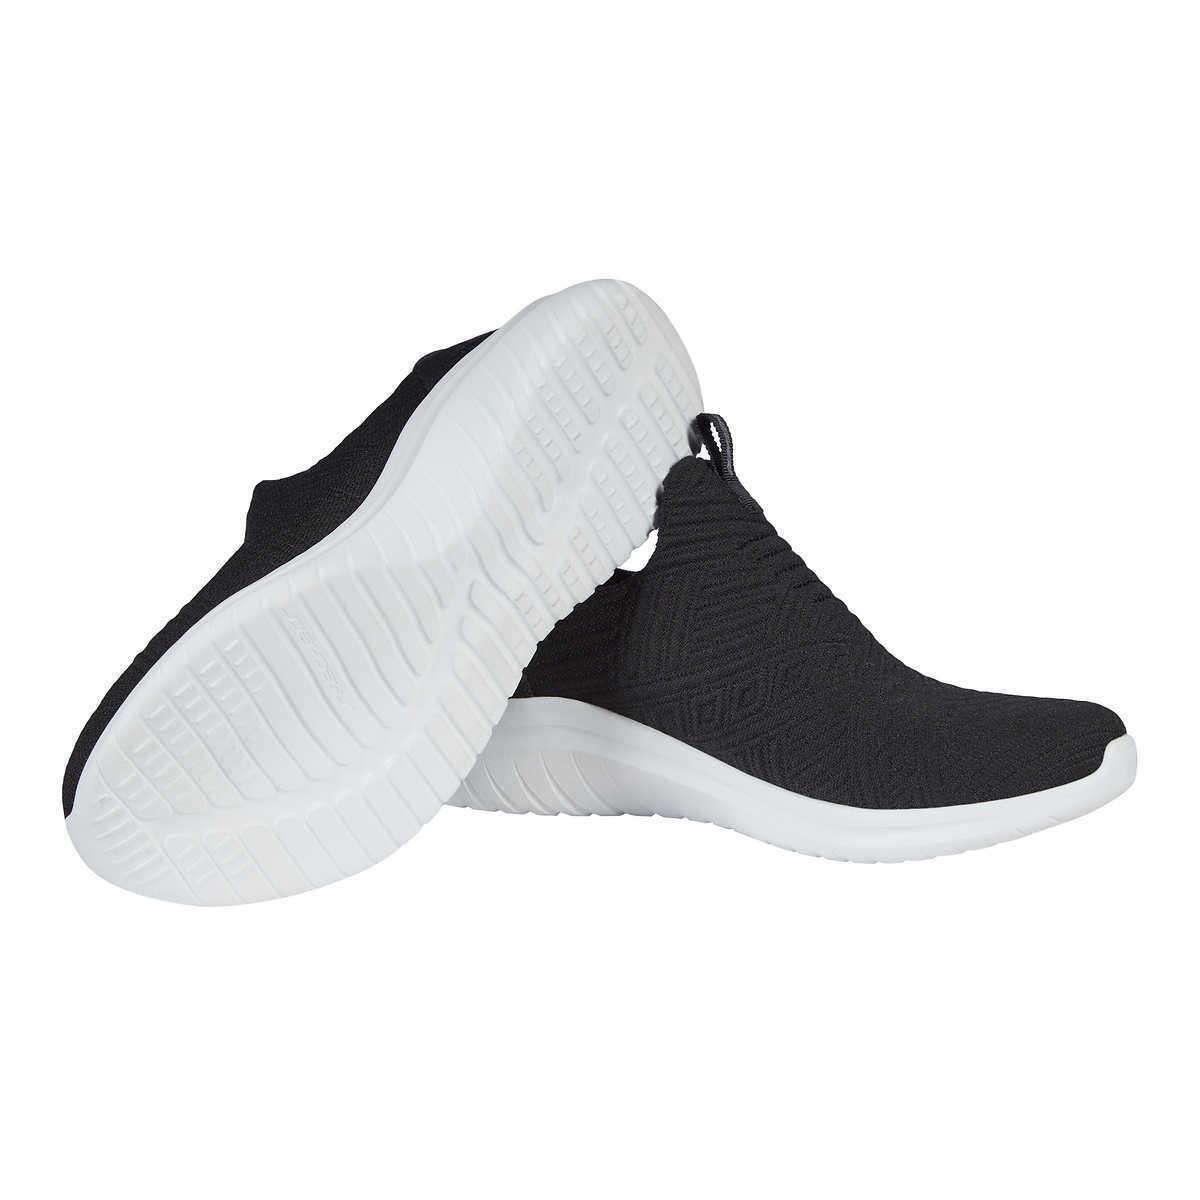 Skechers shoes Ultra Comfort 11